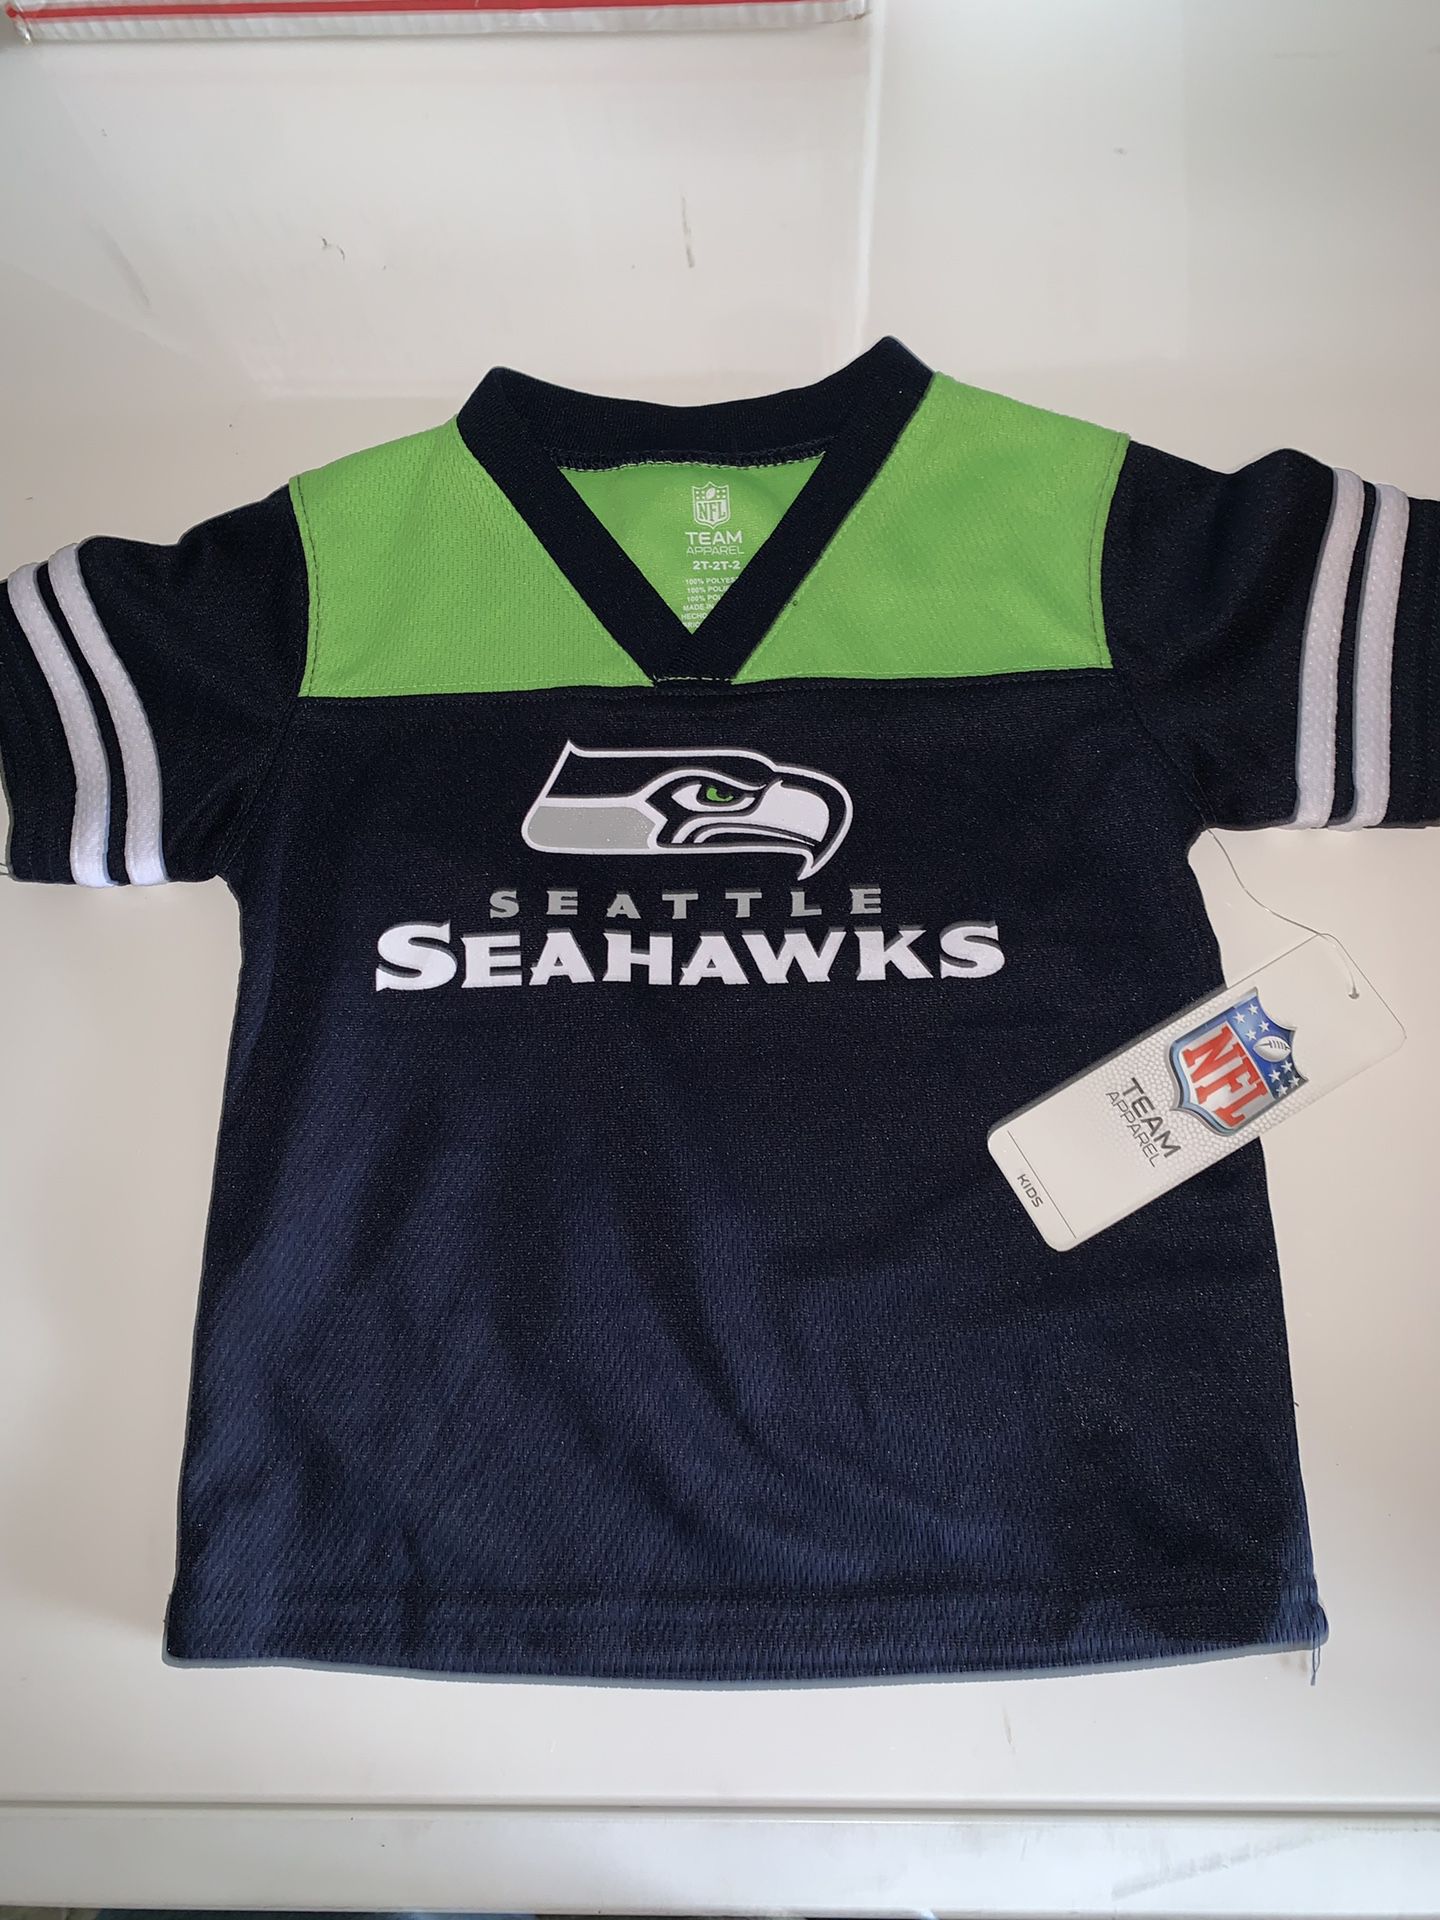 Seattle Seahawks NFL jersey shirt 2t